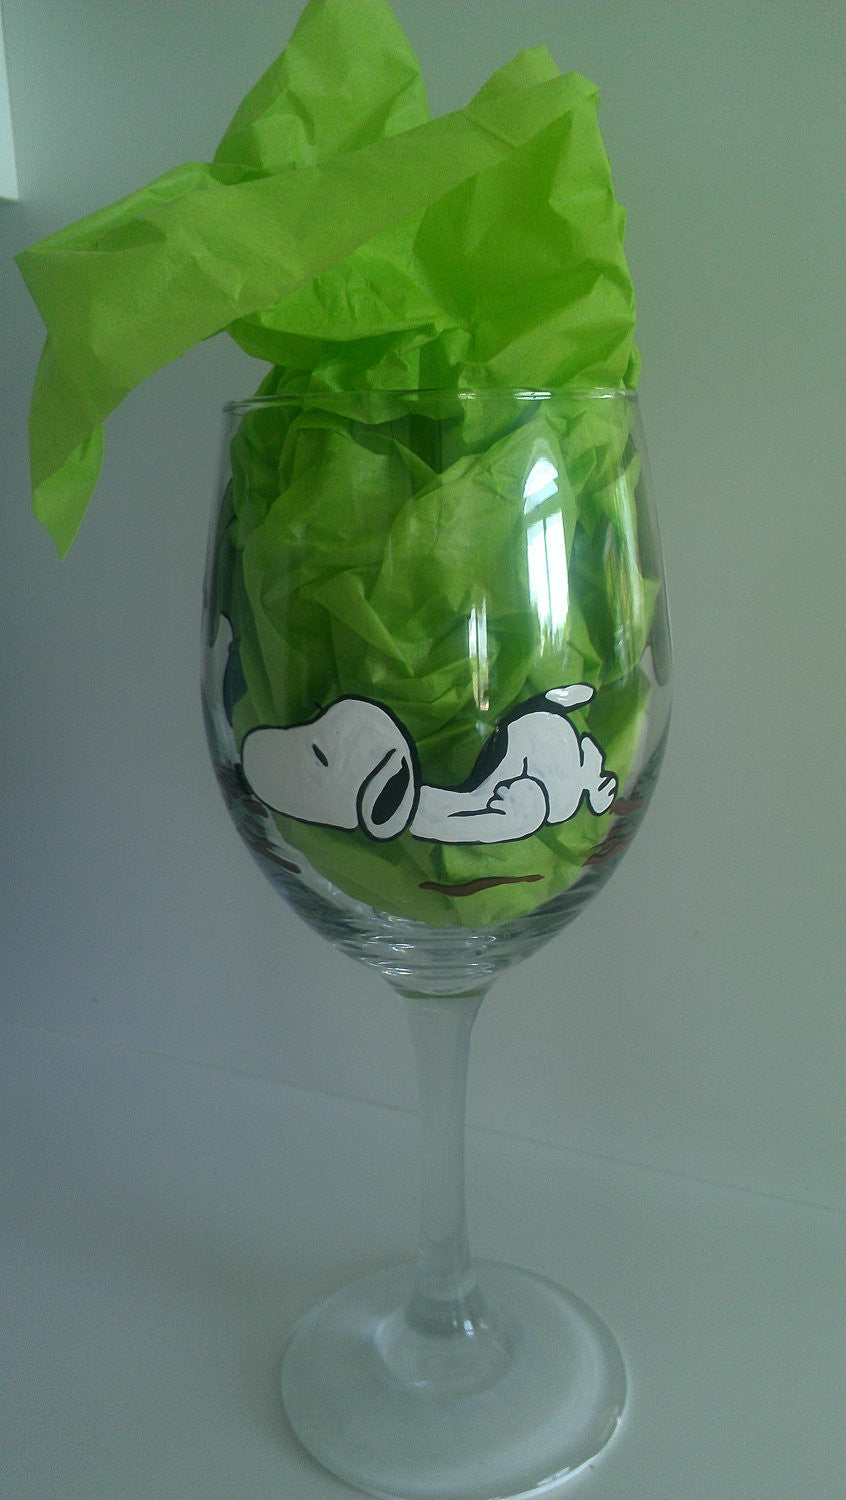 Snoopy Wine Glass 